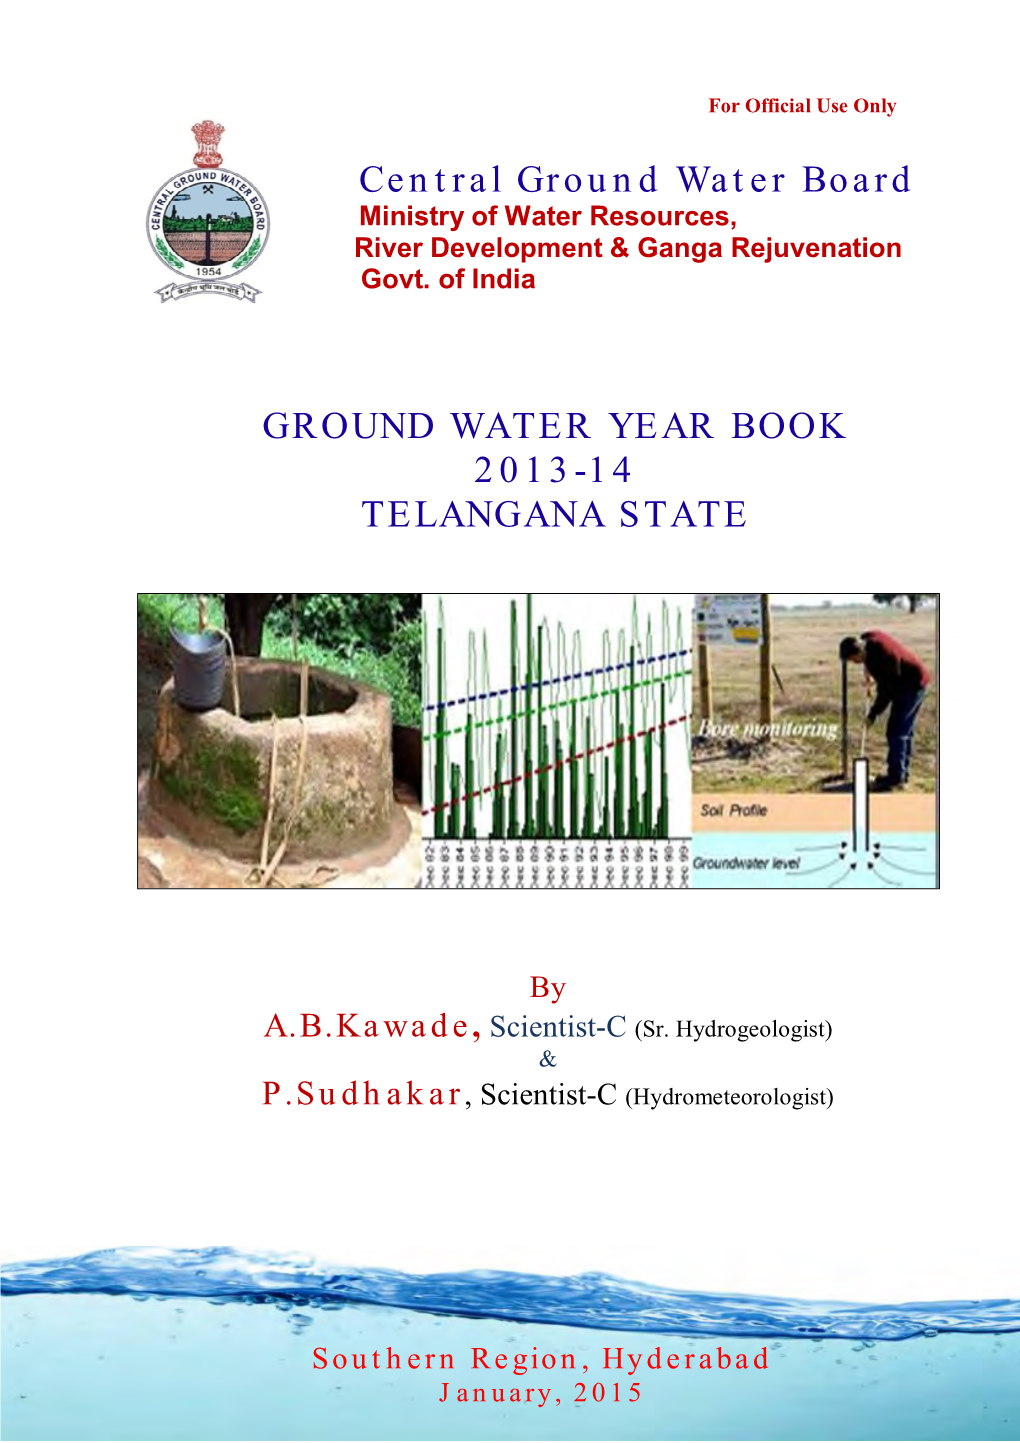 2013-14 Telangana State